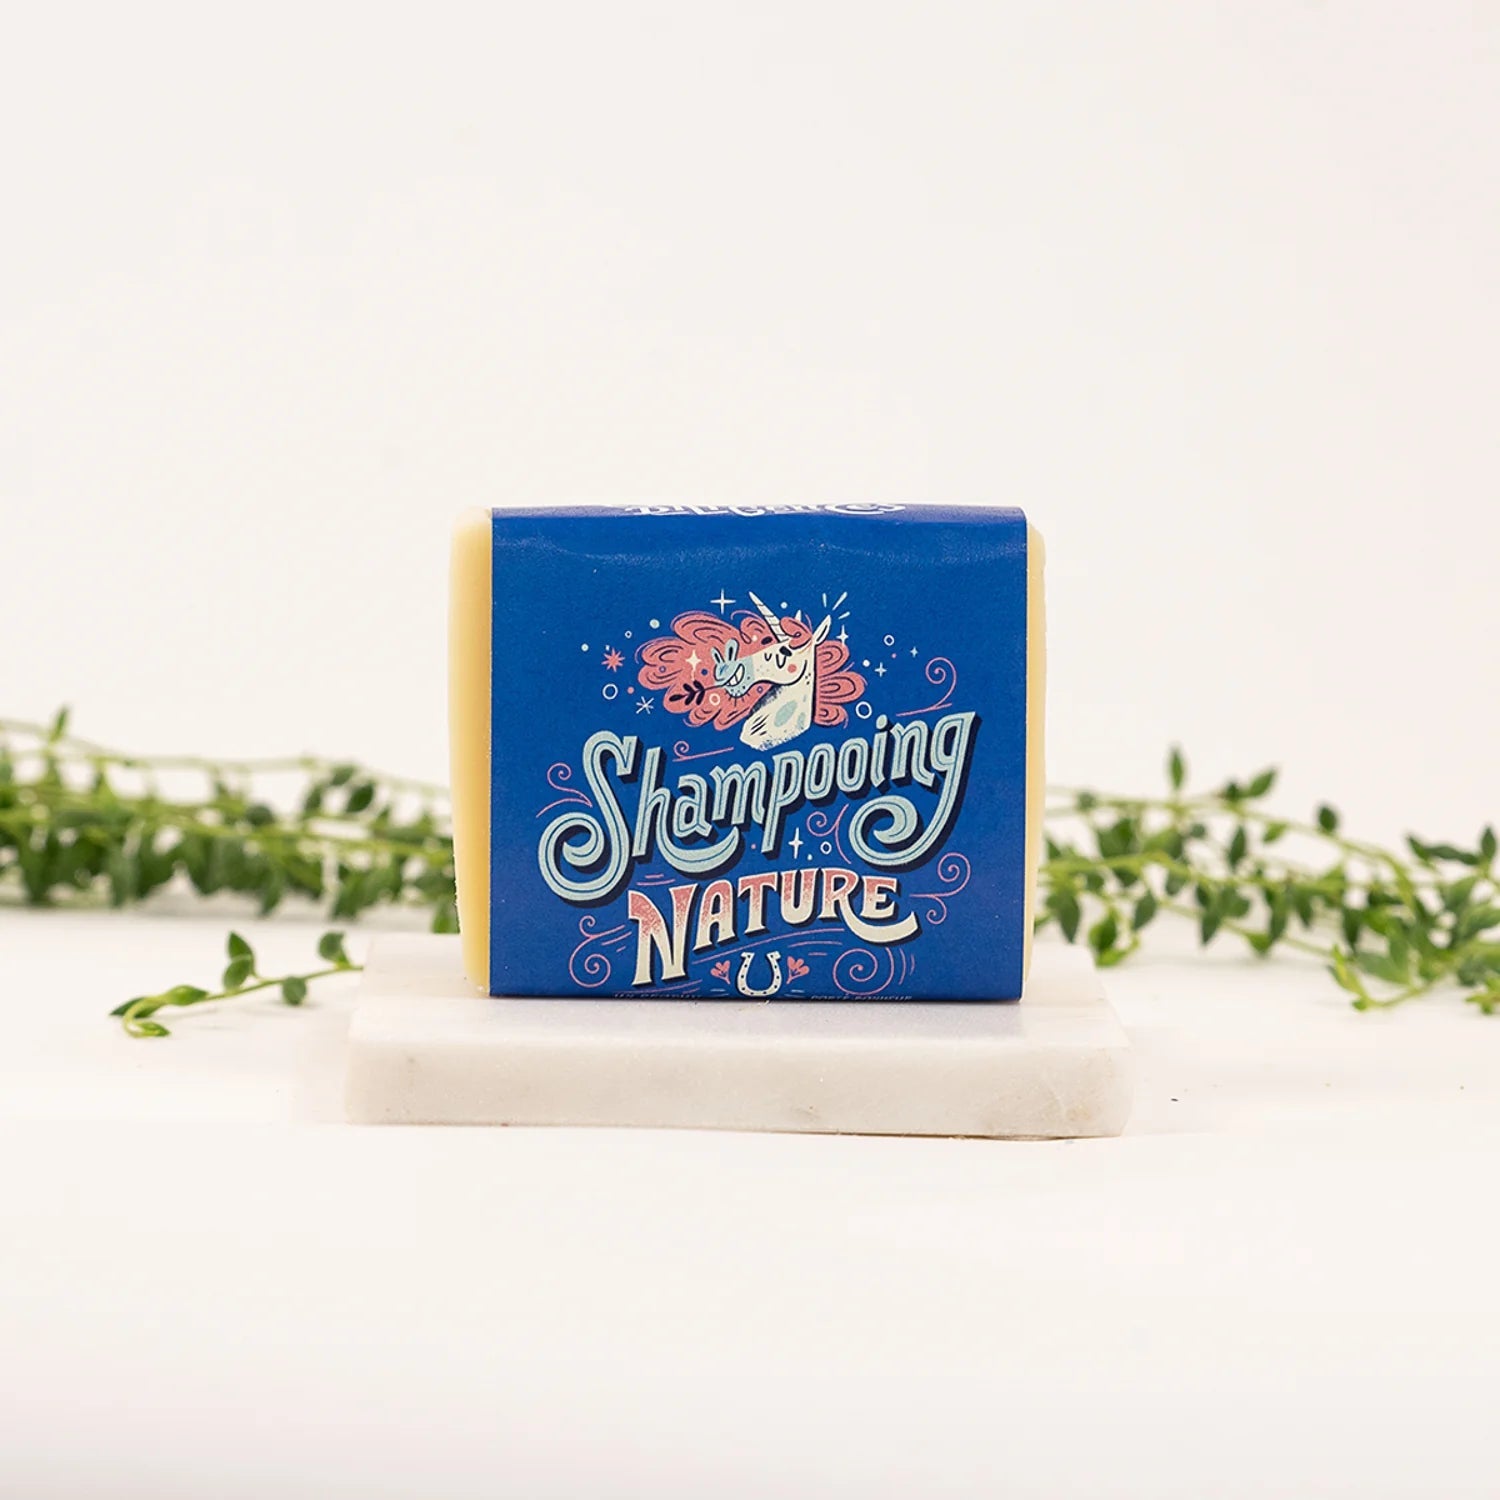 Shampoing nature - Marie fil - Boutique écoresponsable | Culotte menstruelle & Zéro déchet